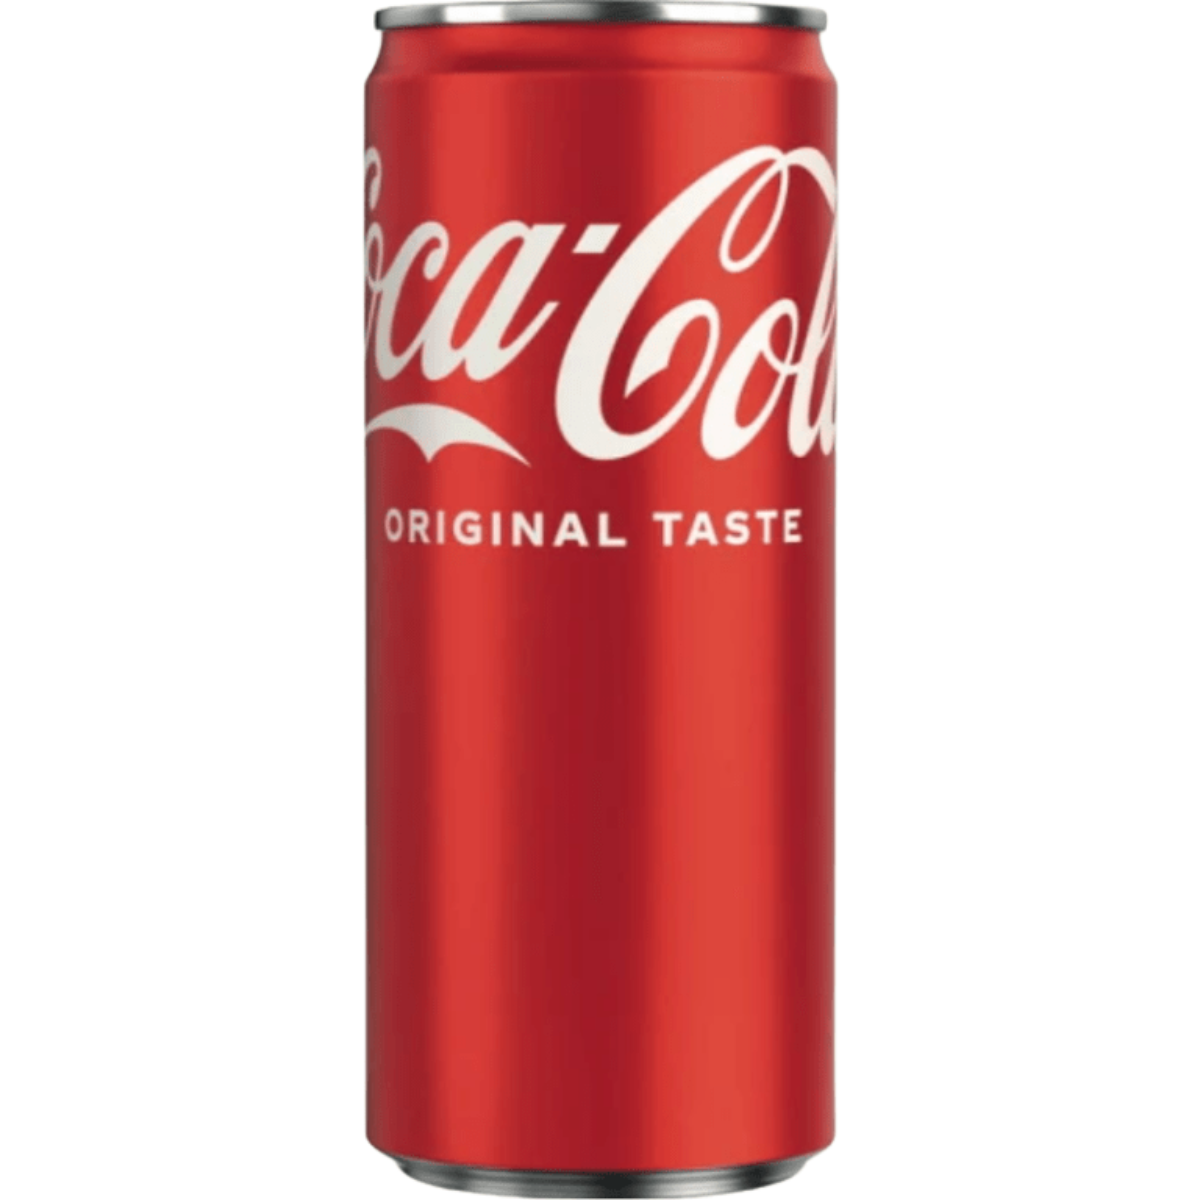 Купить колу оригинал. Coca Cola Original 0,33 Польша. "Coca-Cola" Original taste (Poland), in can Slim, 0.33 л. Кока-кола 0.33 ж/б Польша. Coca-Cola 0,33л.Original.